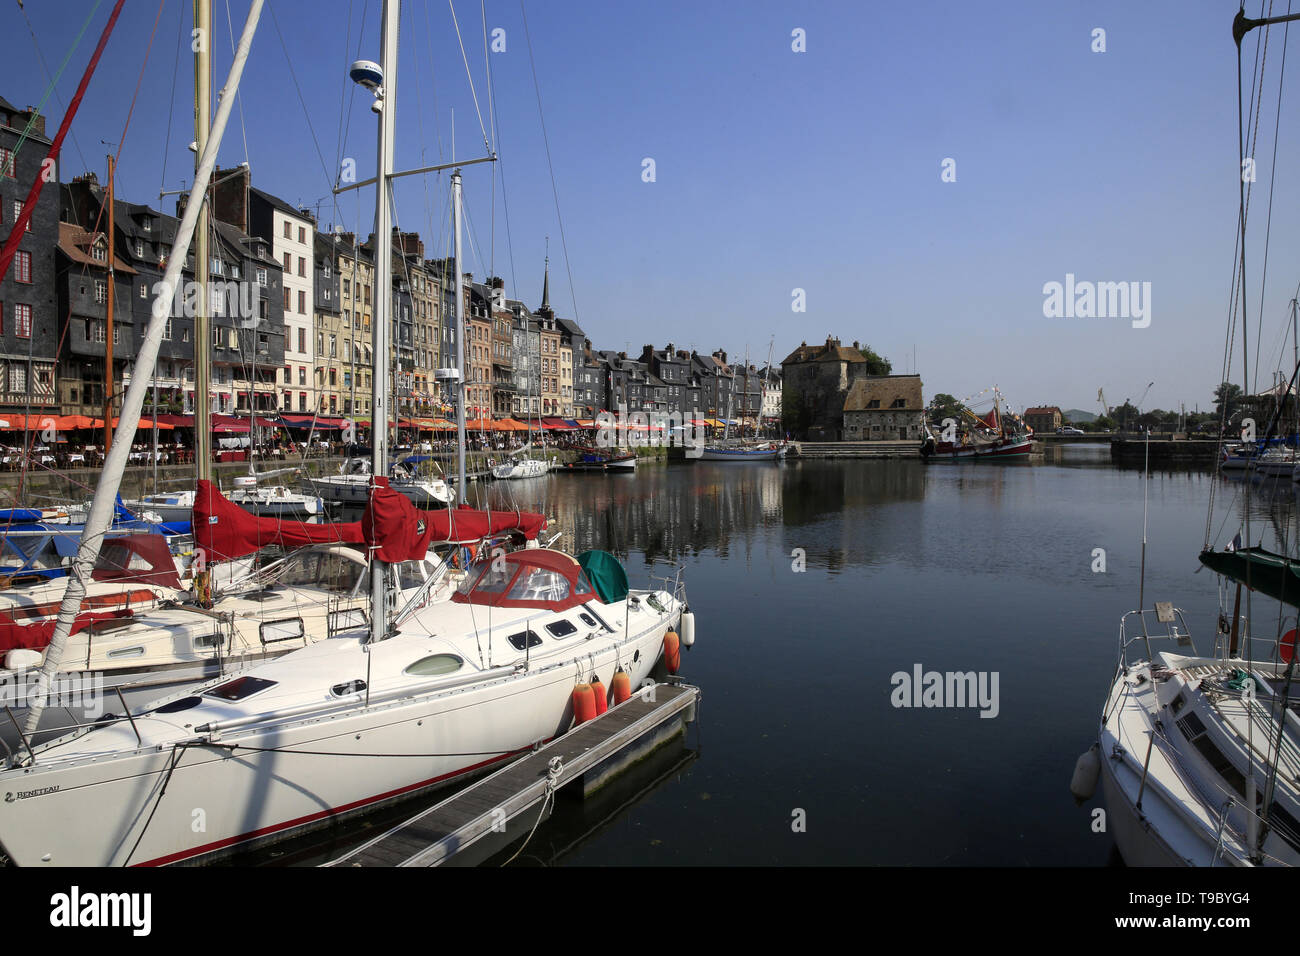 Le Vieux Bassin est un Port situé au Centre de la Ville d'Honfleur dans le département français du Calvados en région Normandie. Honfleur. Stockfoto